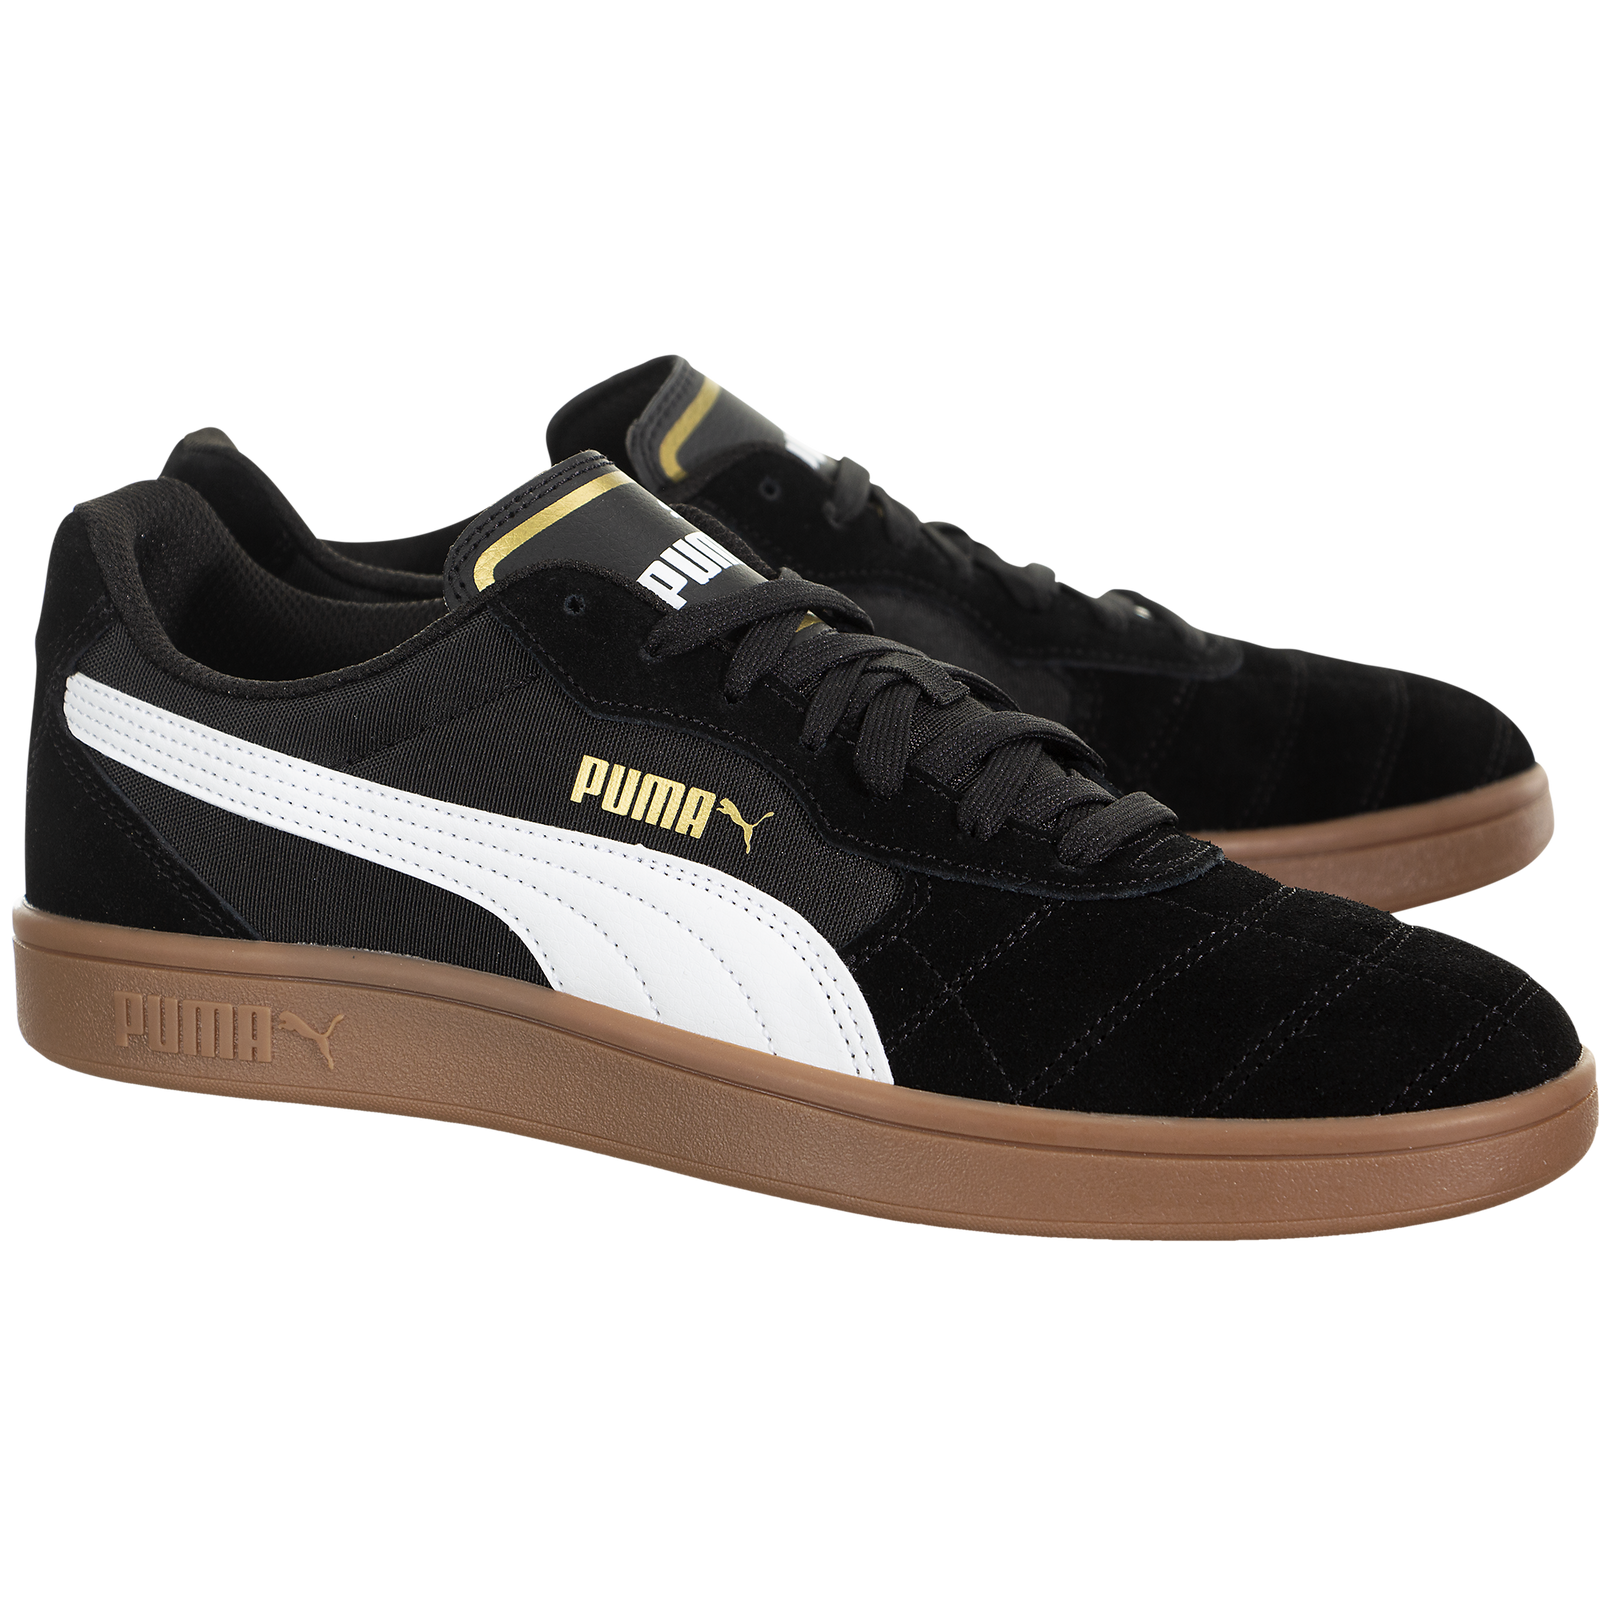 Puma Astro Kick - 36911506 - Sneakerhead.com – SNEAKERHEAD.com